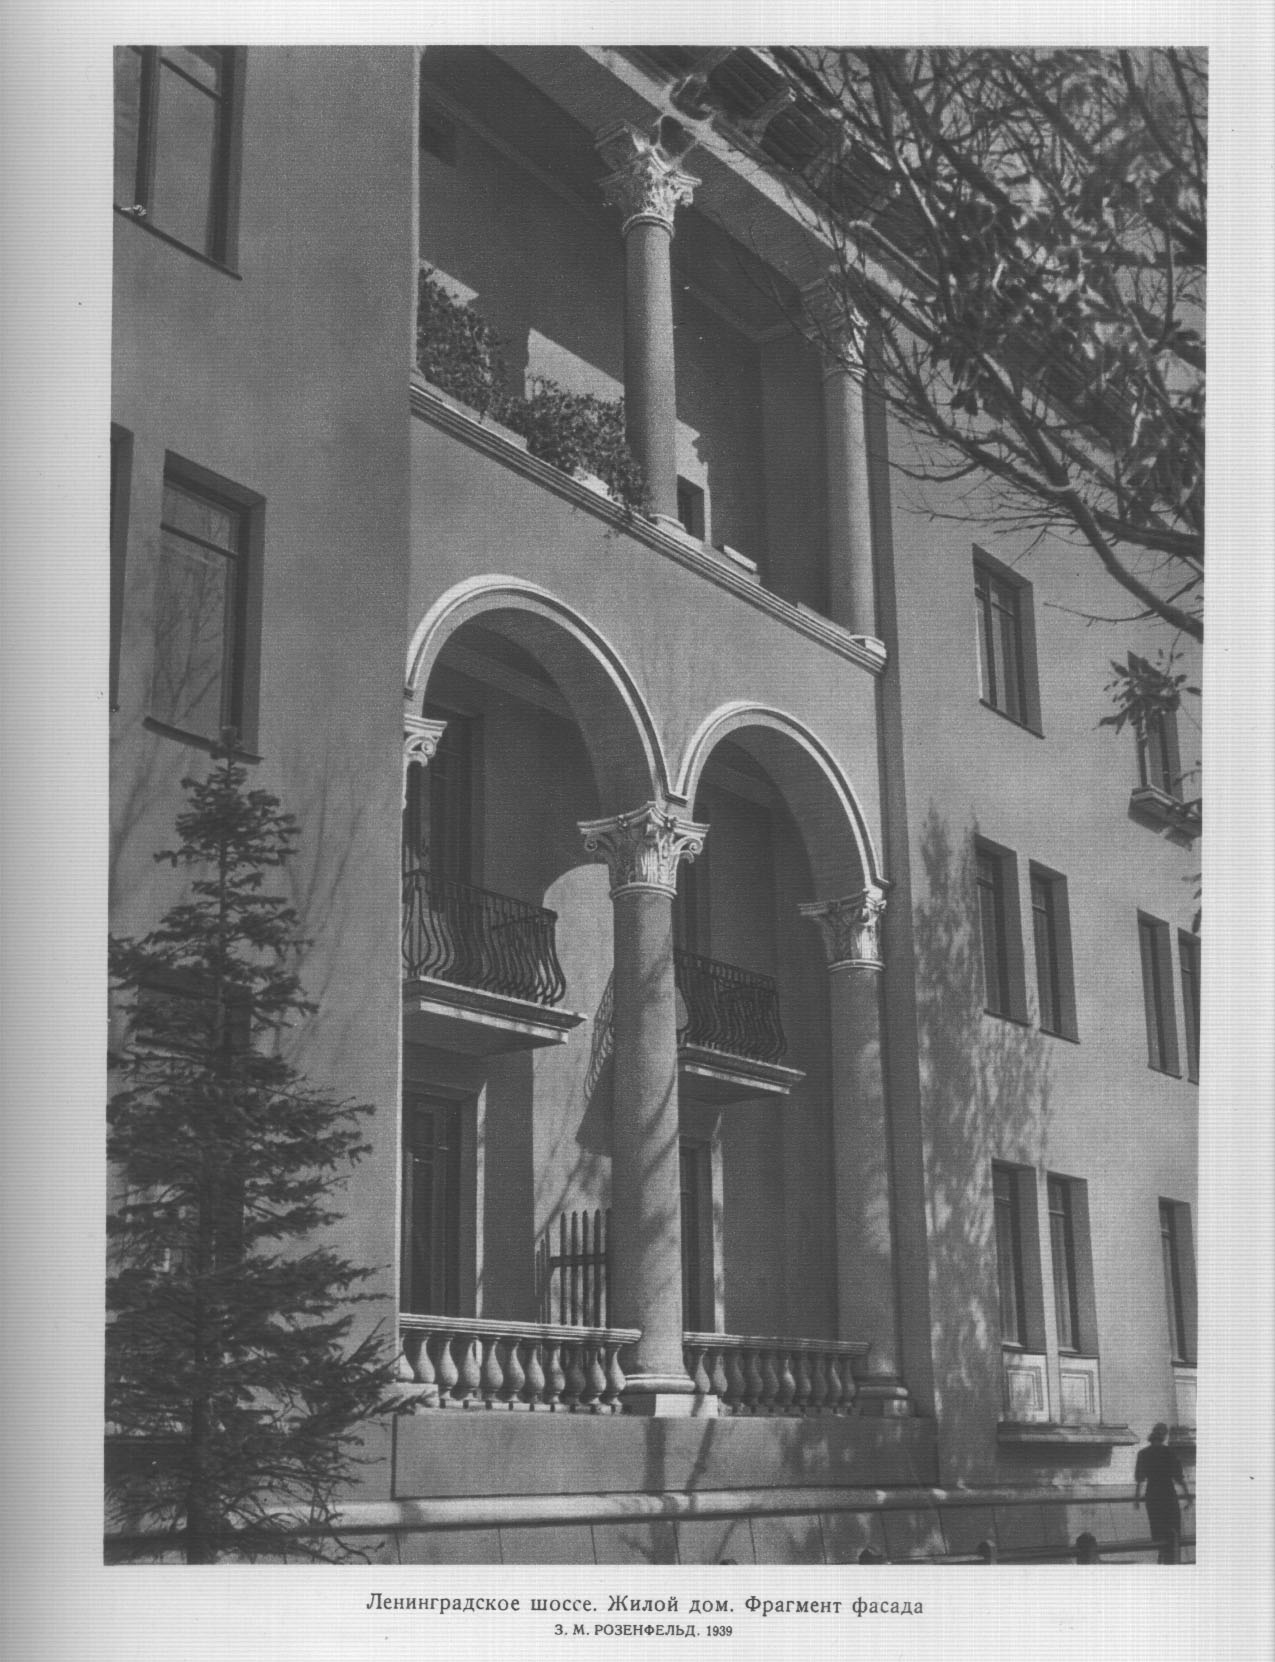 Ленинградское шоссе. Жилой дом. Фрагмент фасада. З. М. Розенфельд. 1939